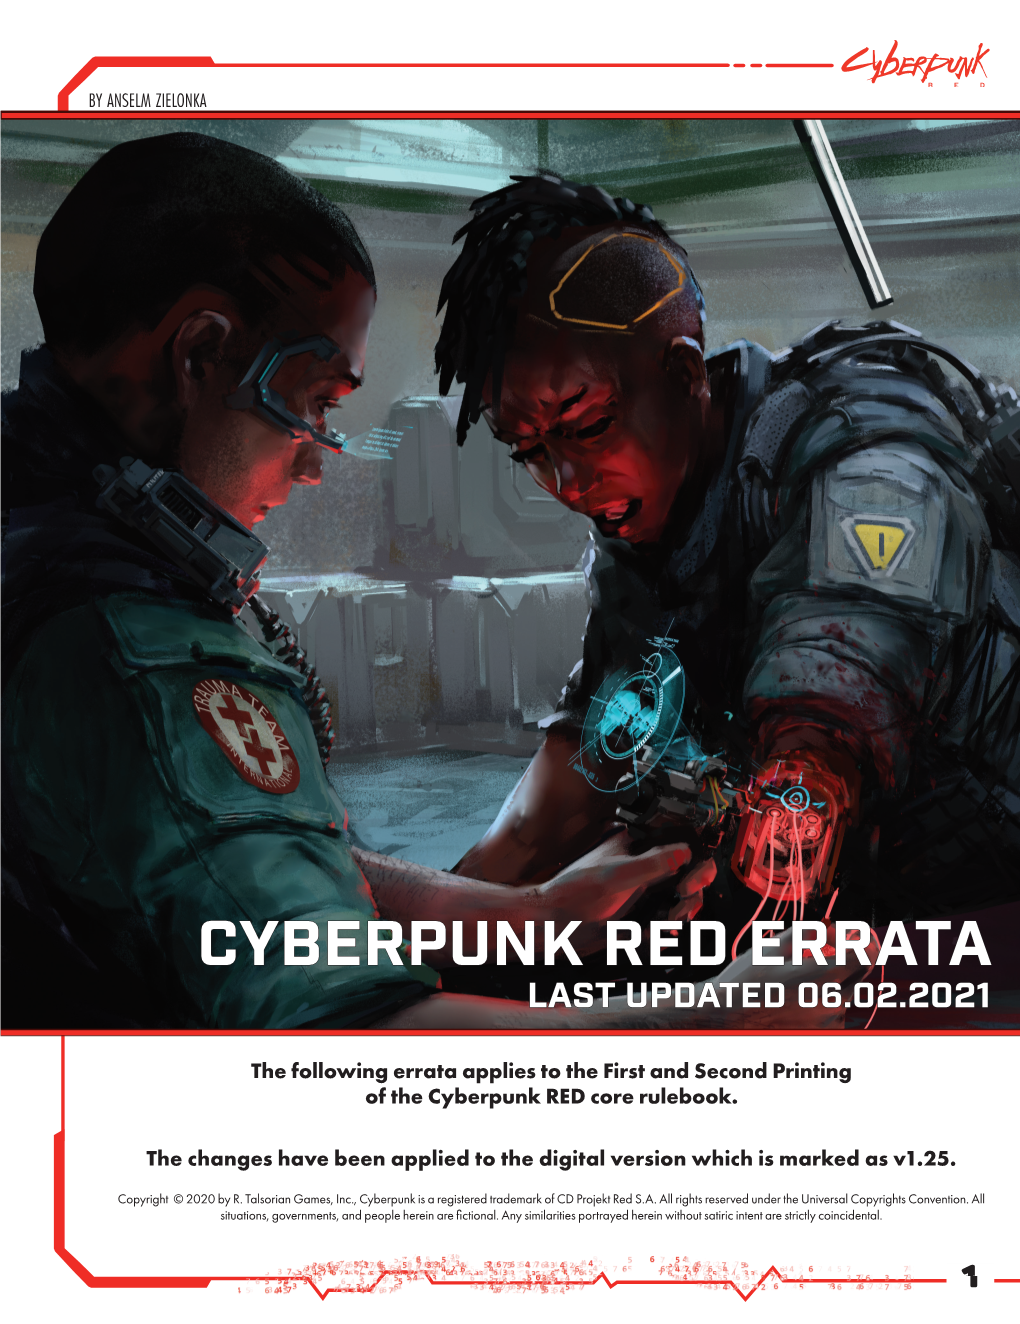 Cyberpunk Red Errata Last Updated 06.02.2021